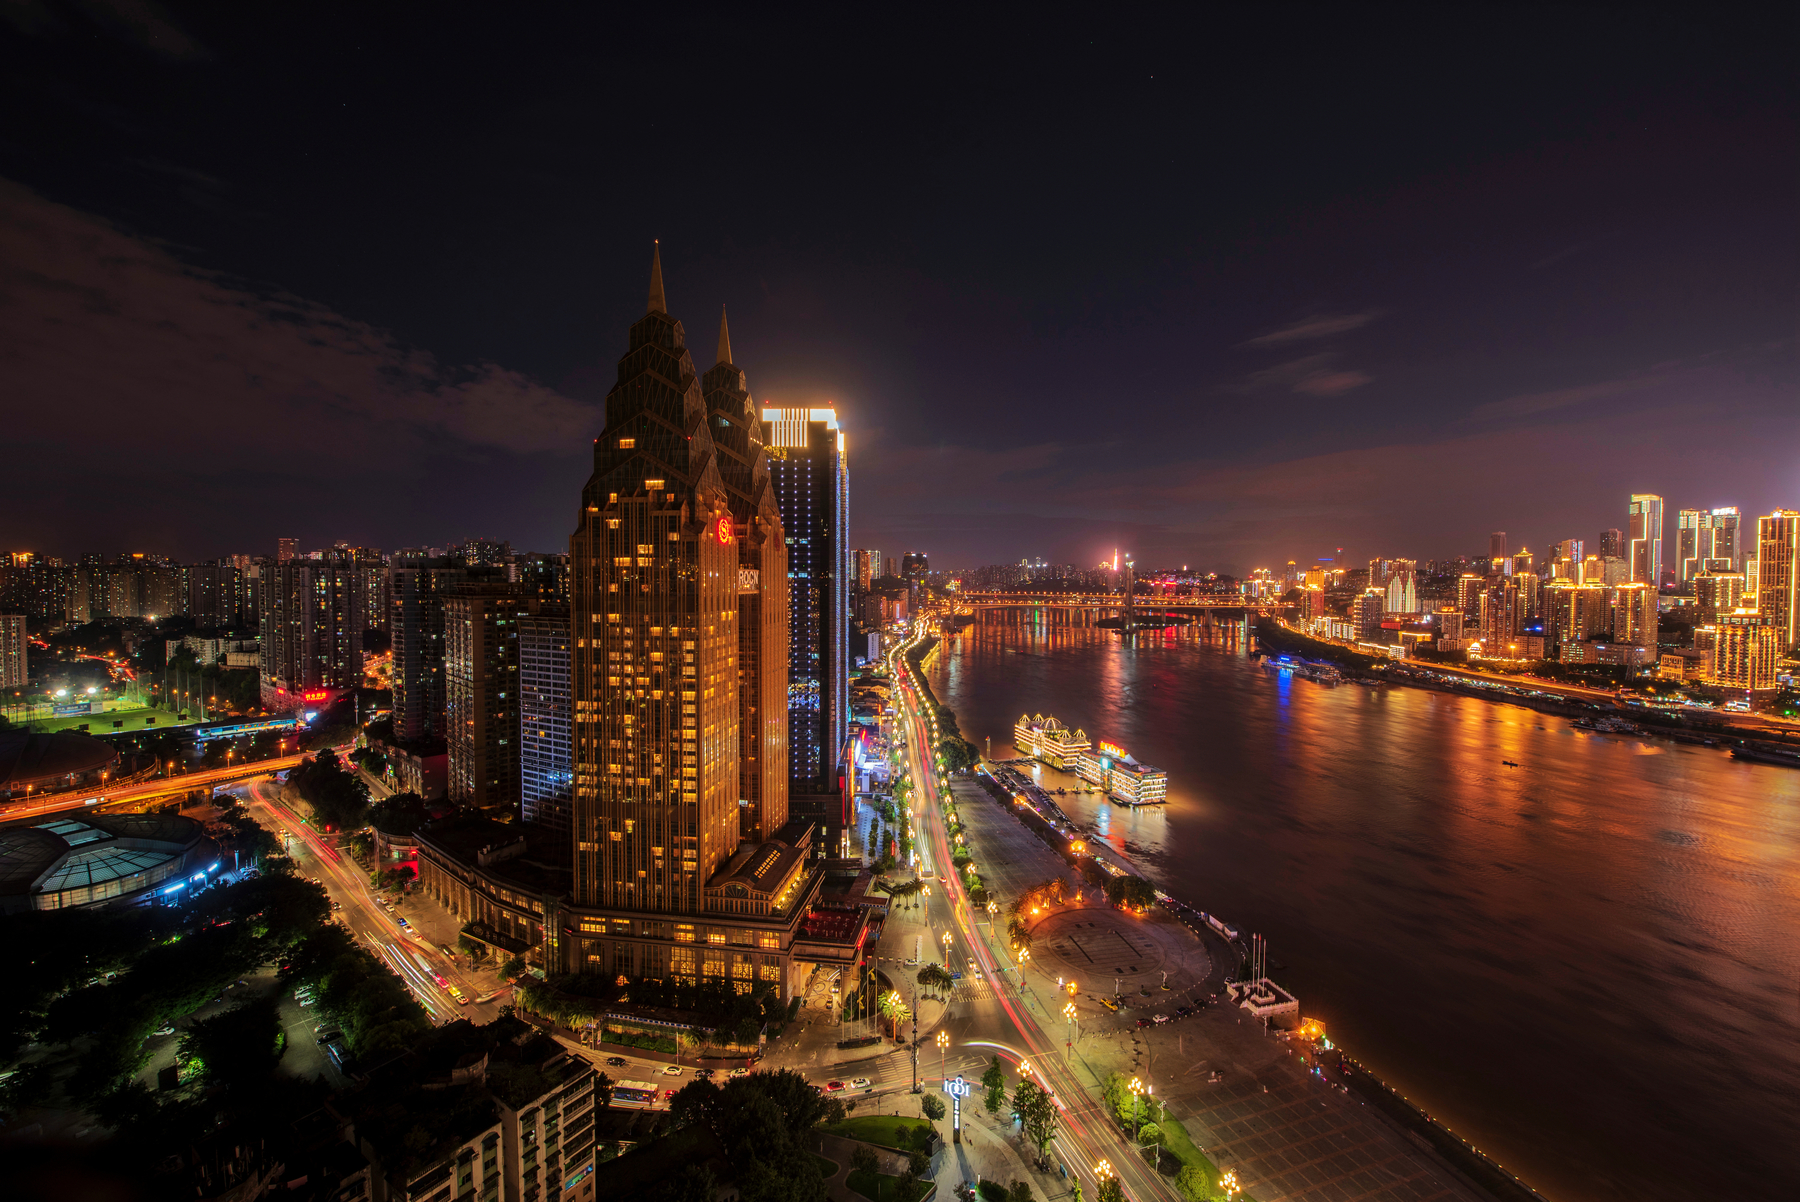 风光摄影:夜幕降临的重庆南滨路